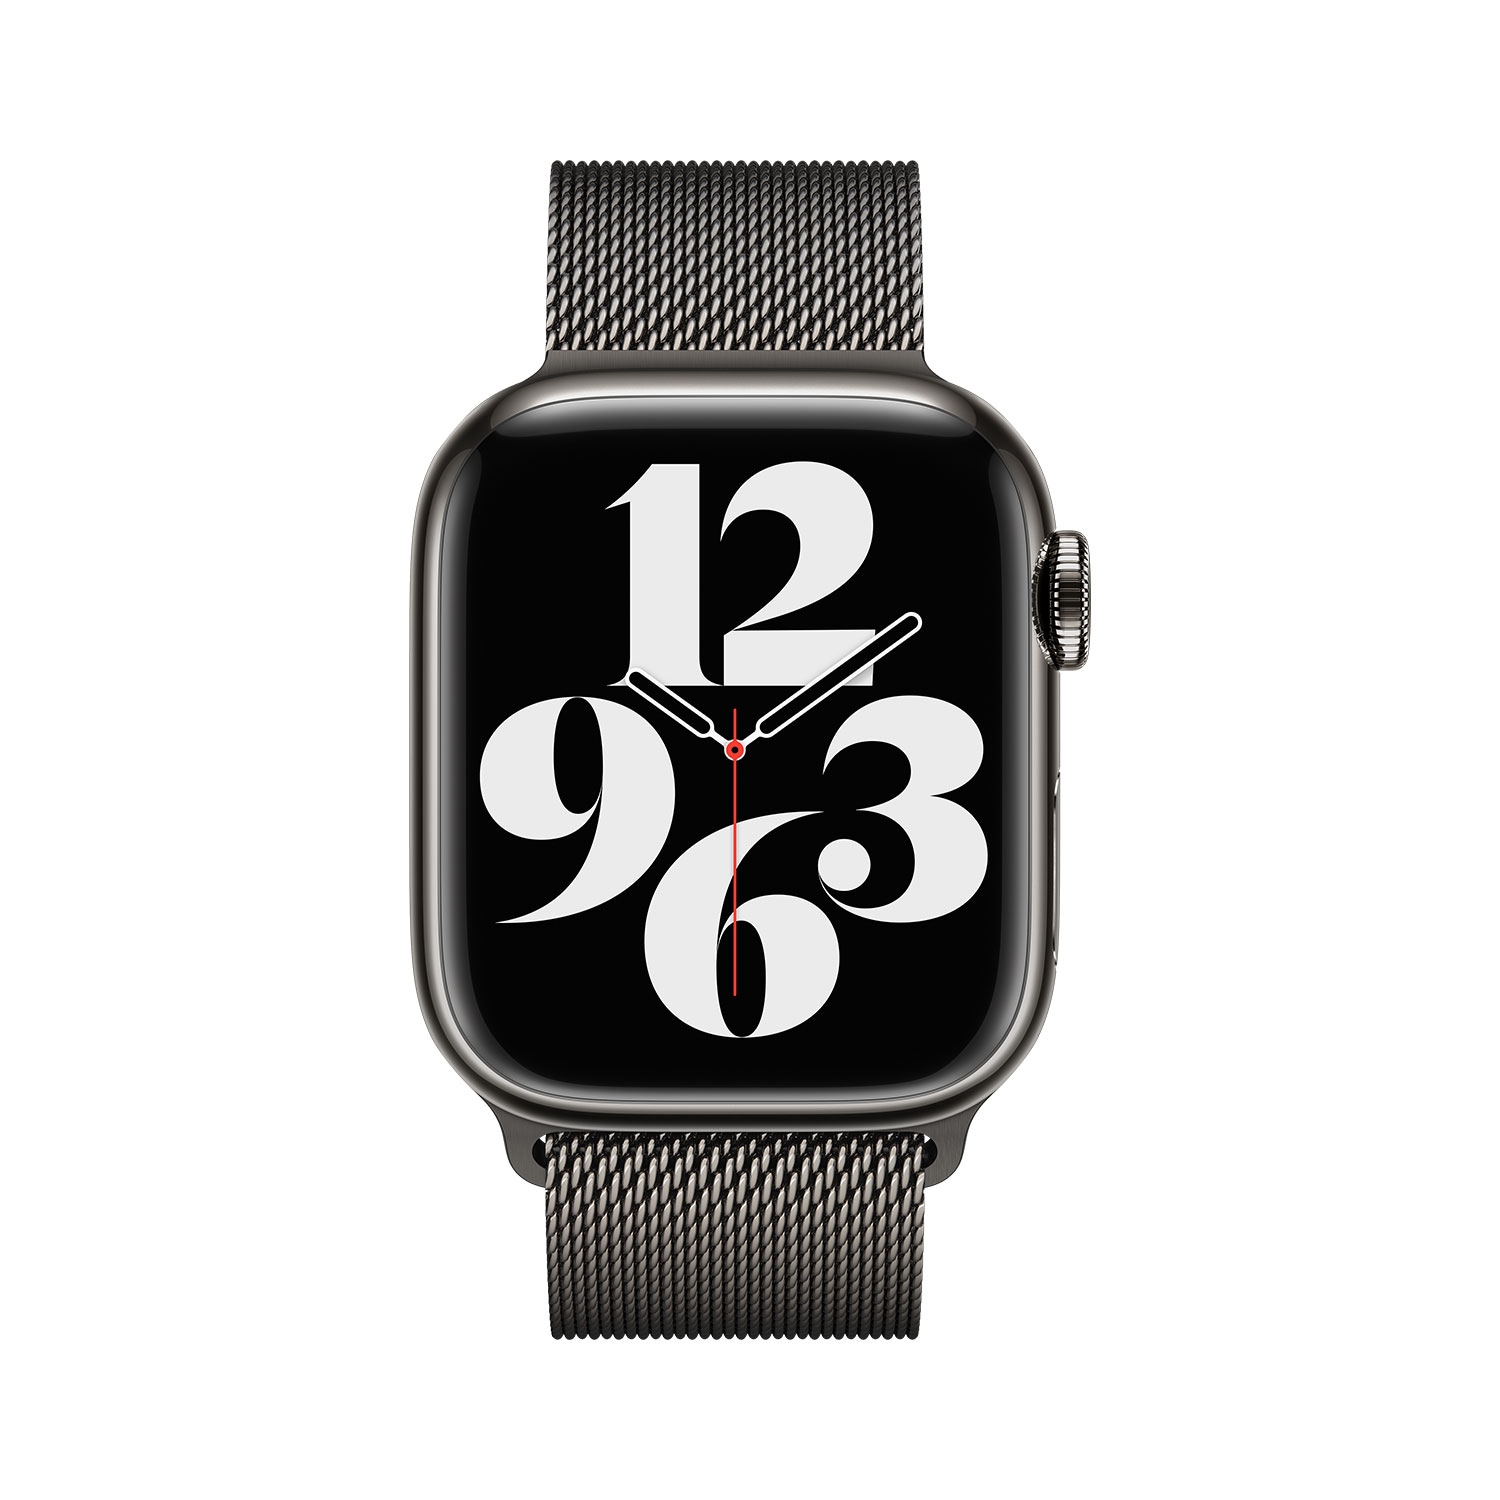 OTTO Milanaise jetzt mm, Apple bei »41 für Smartwatch-Armband Watch« online Apple